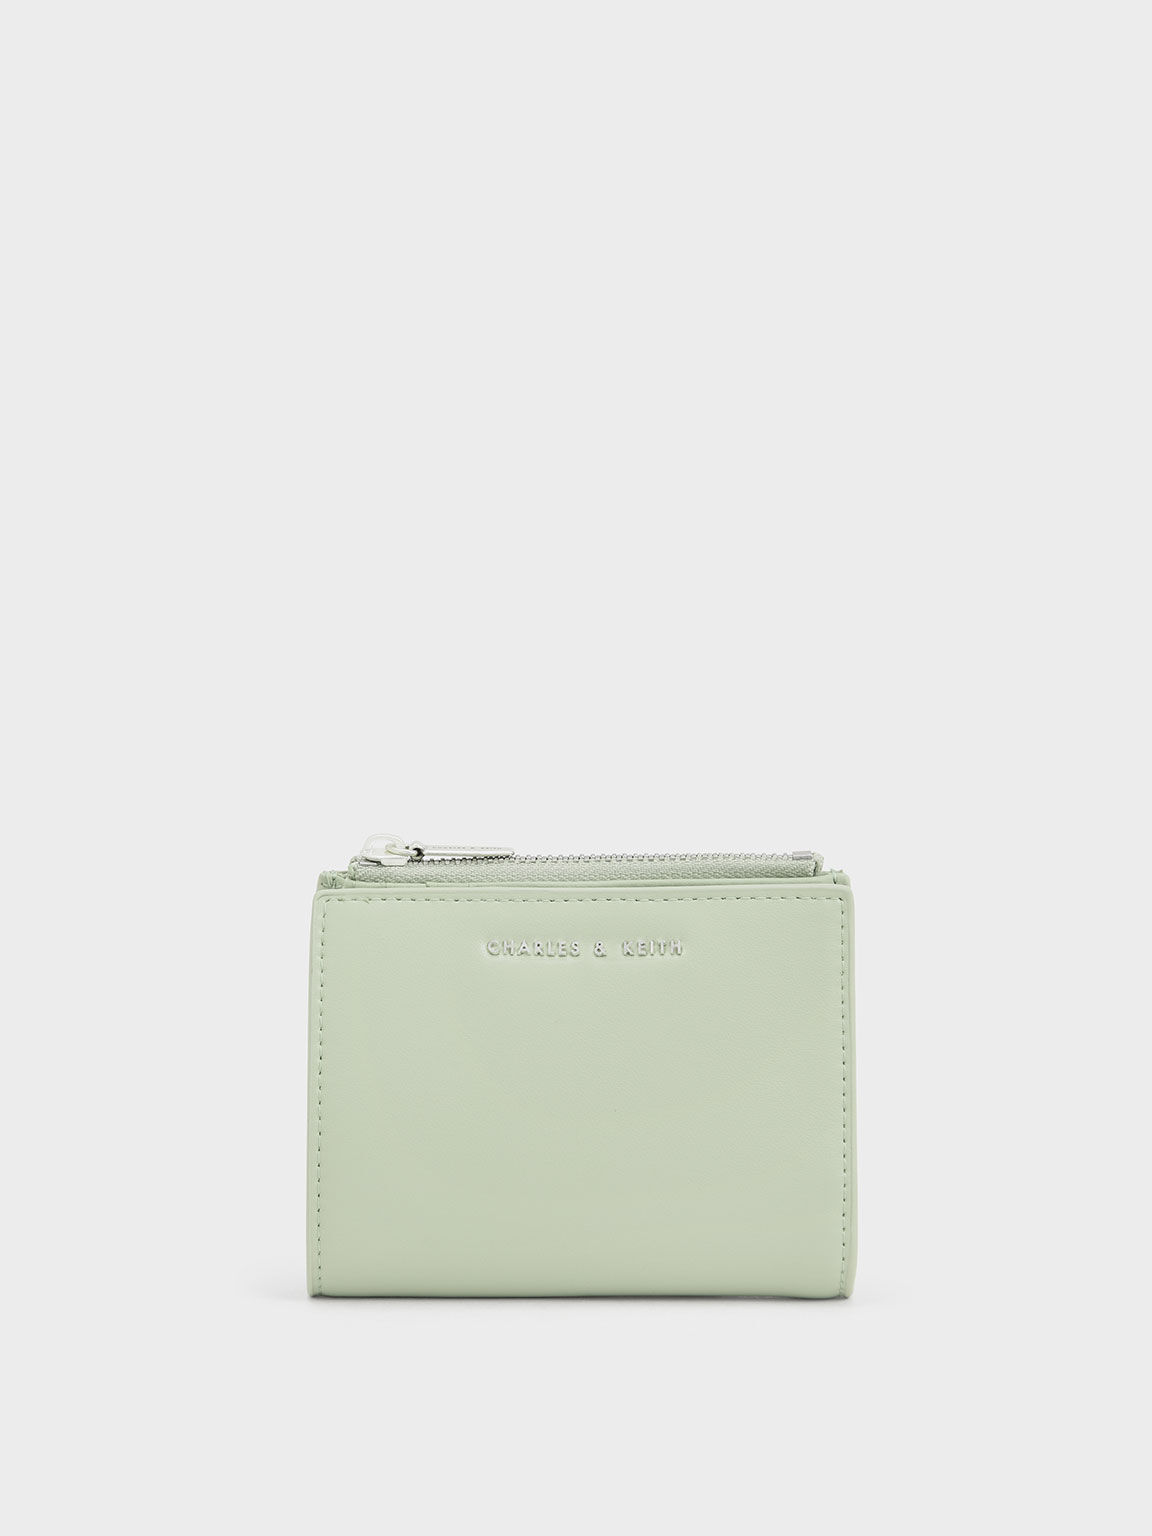 Top Zip Mini Wallet, Mint Green, hi-res